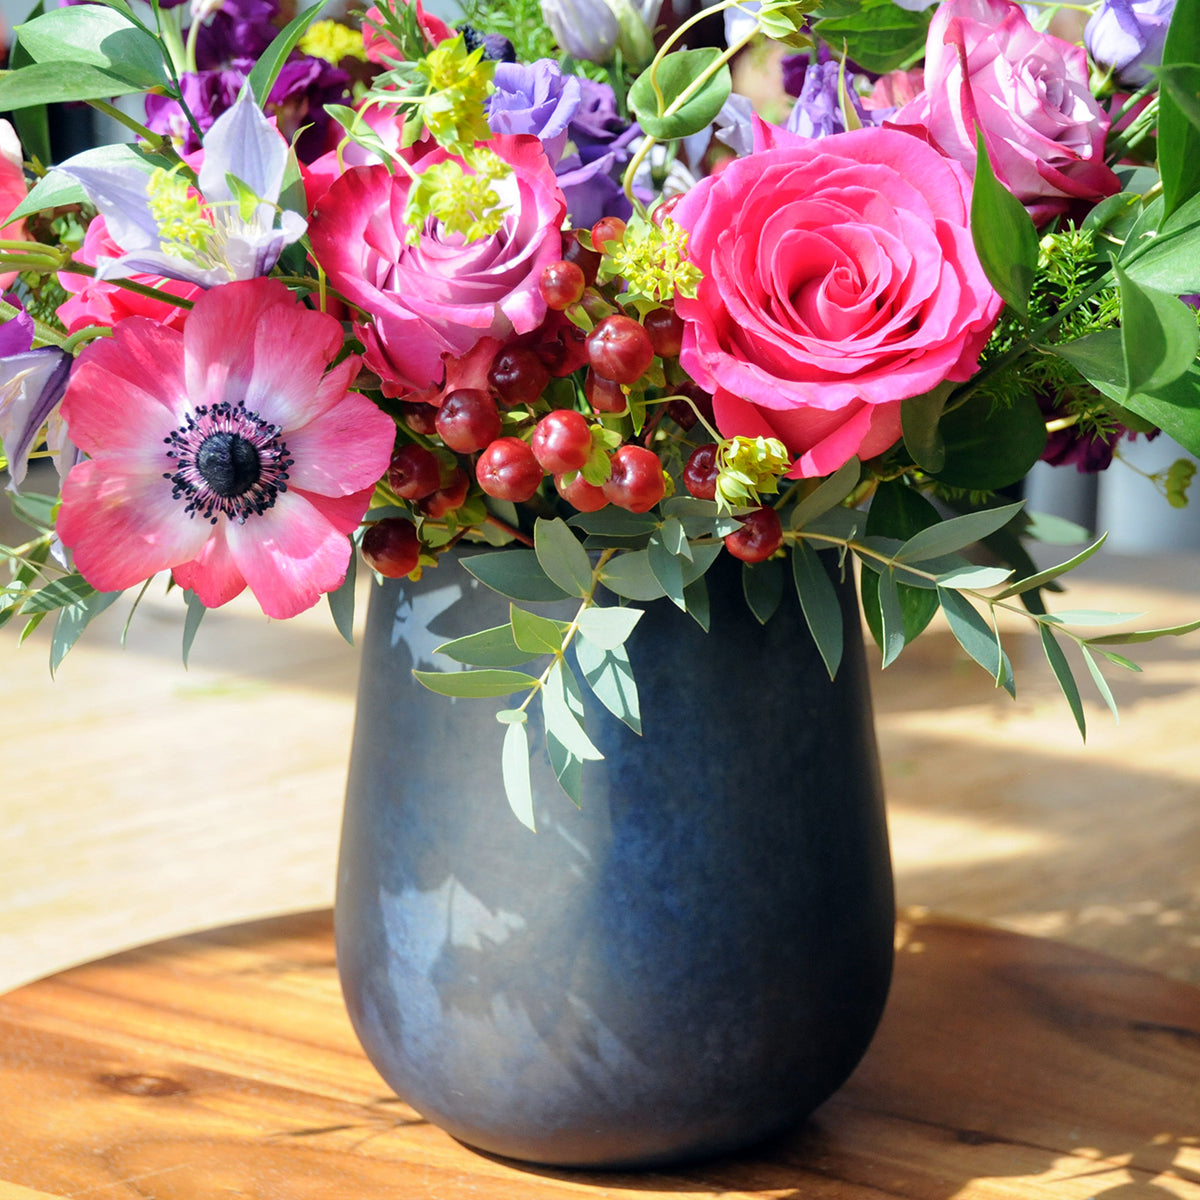 Raindrop Vase featured in Aldrich floral arrangement 